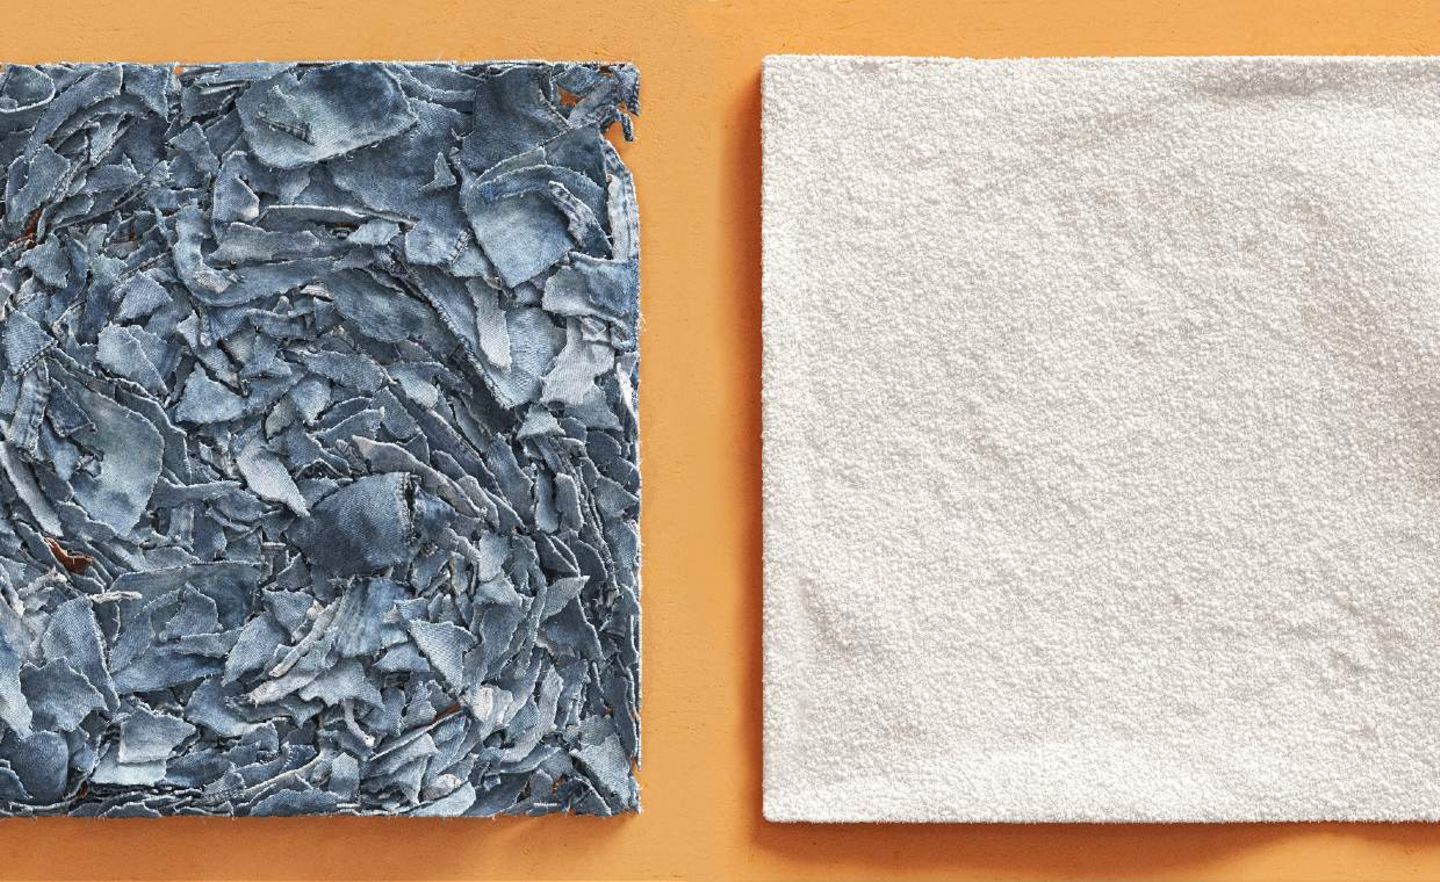 Recycling im Vergleich – links: geschredderter Jeans-Stoff, rechts: der Cellulose-Zellstoff von Renewcell